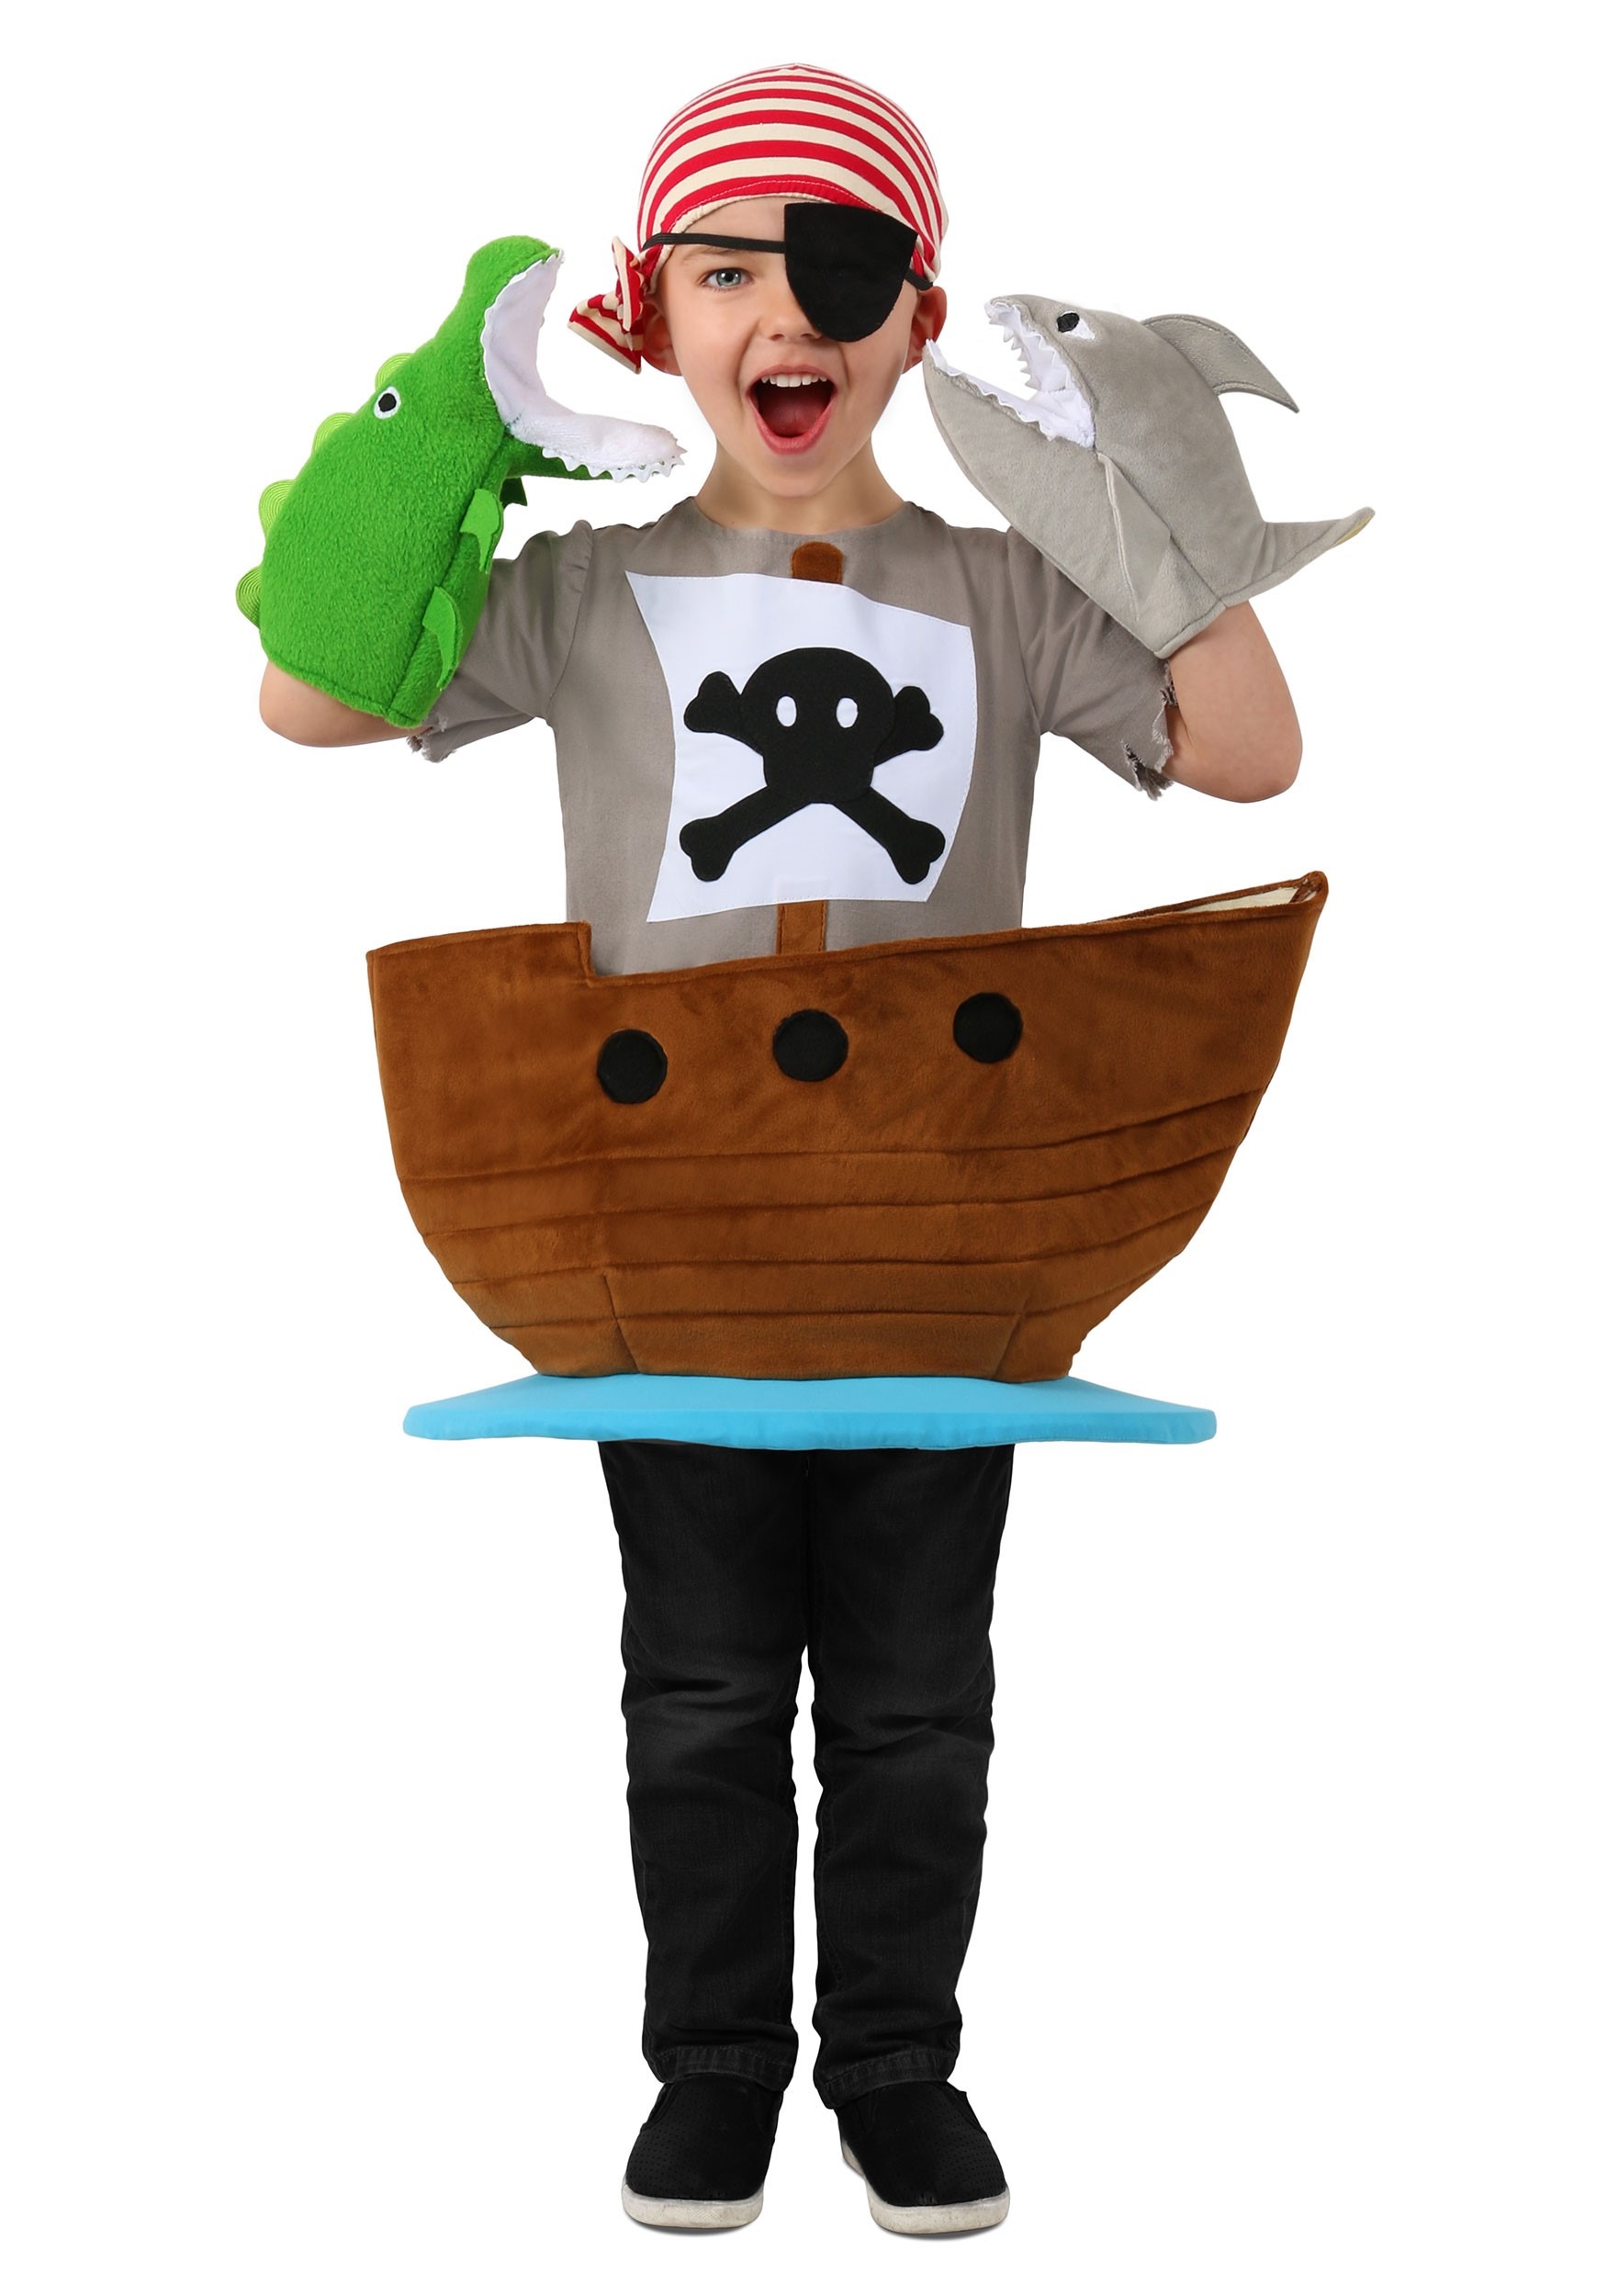 Fantasia Infantil de Pirata para Carnaval - Dicas Práticas